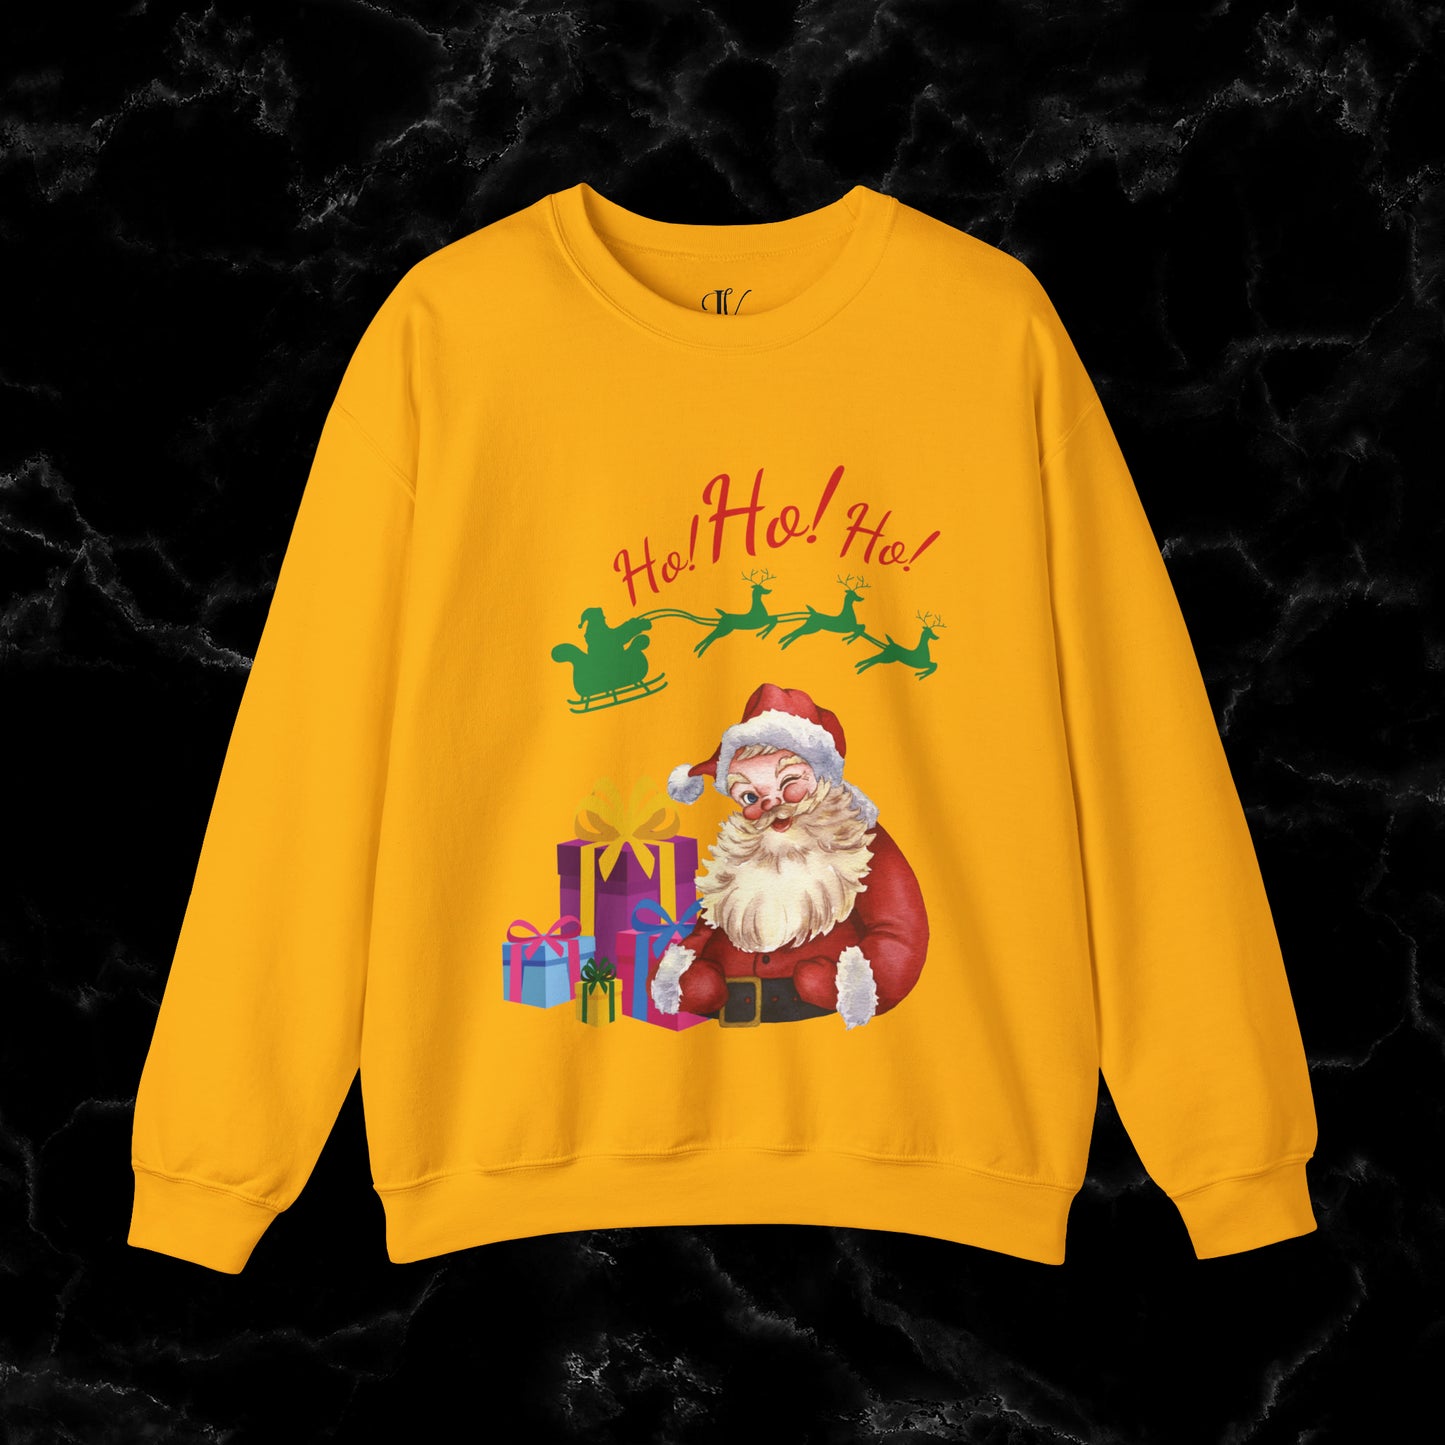 Retro Santa Sweatshirt - Vintage Christmas Fashion for Holiday Cheer Sweatshirt S Gold 